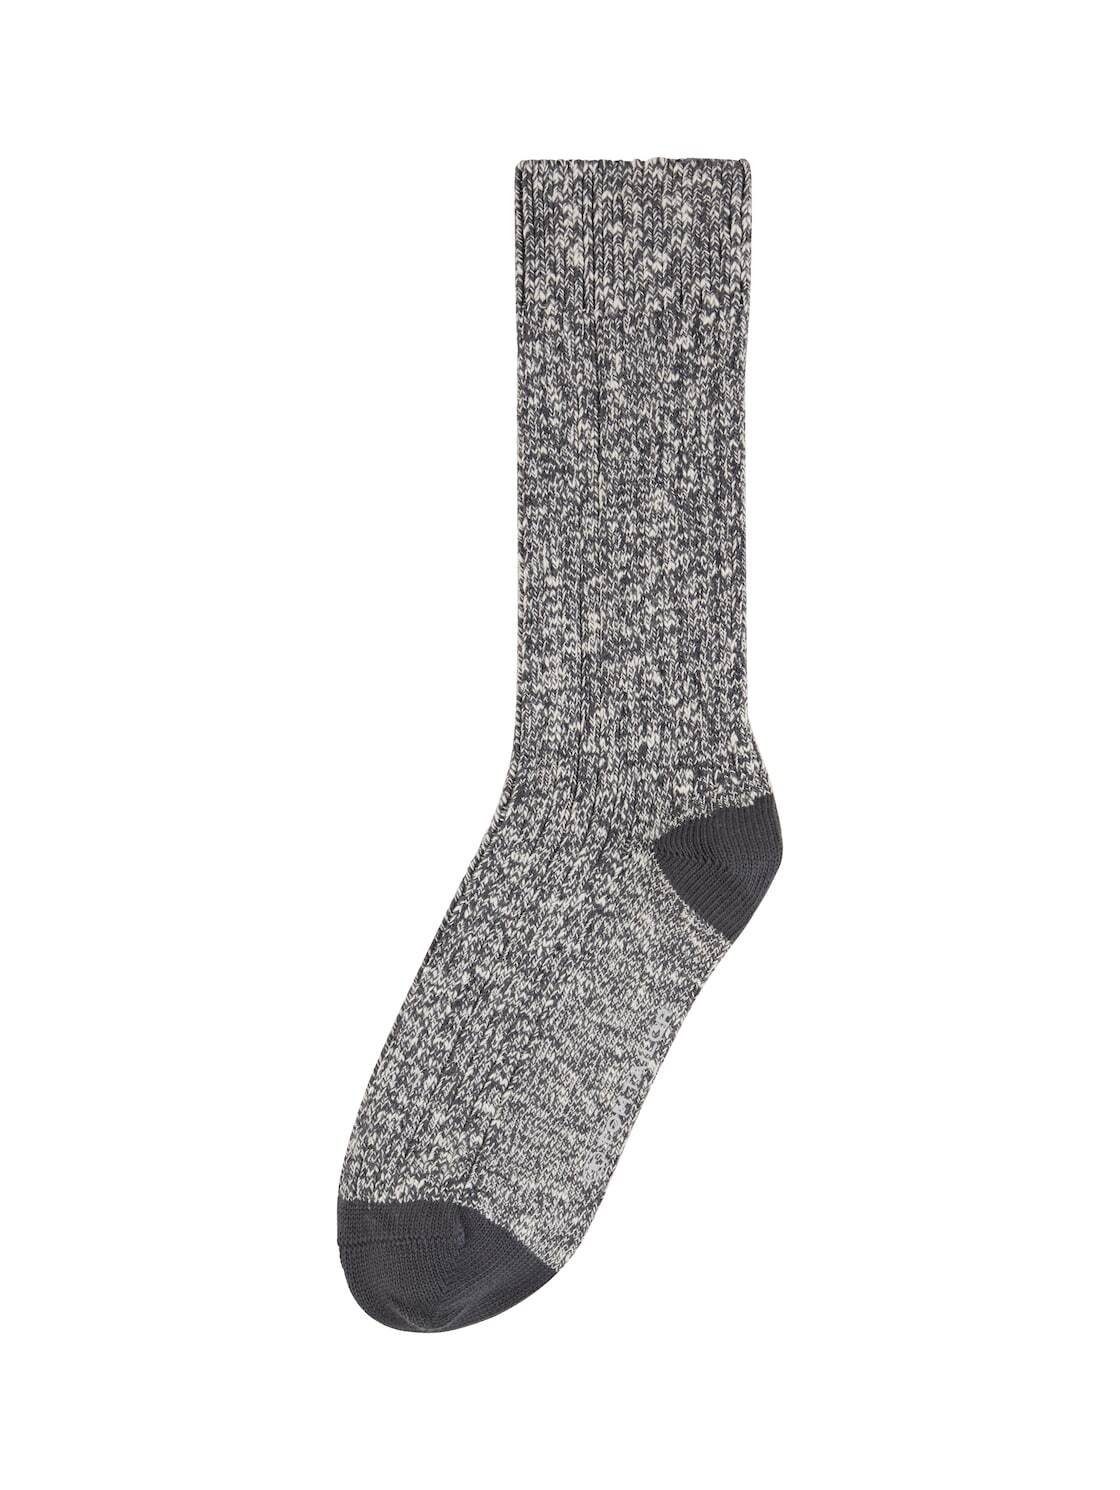 TOM TAILOR Socken Socken in Melange Optik (im Doppelpack)